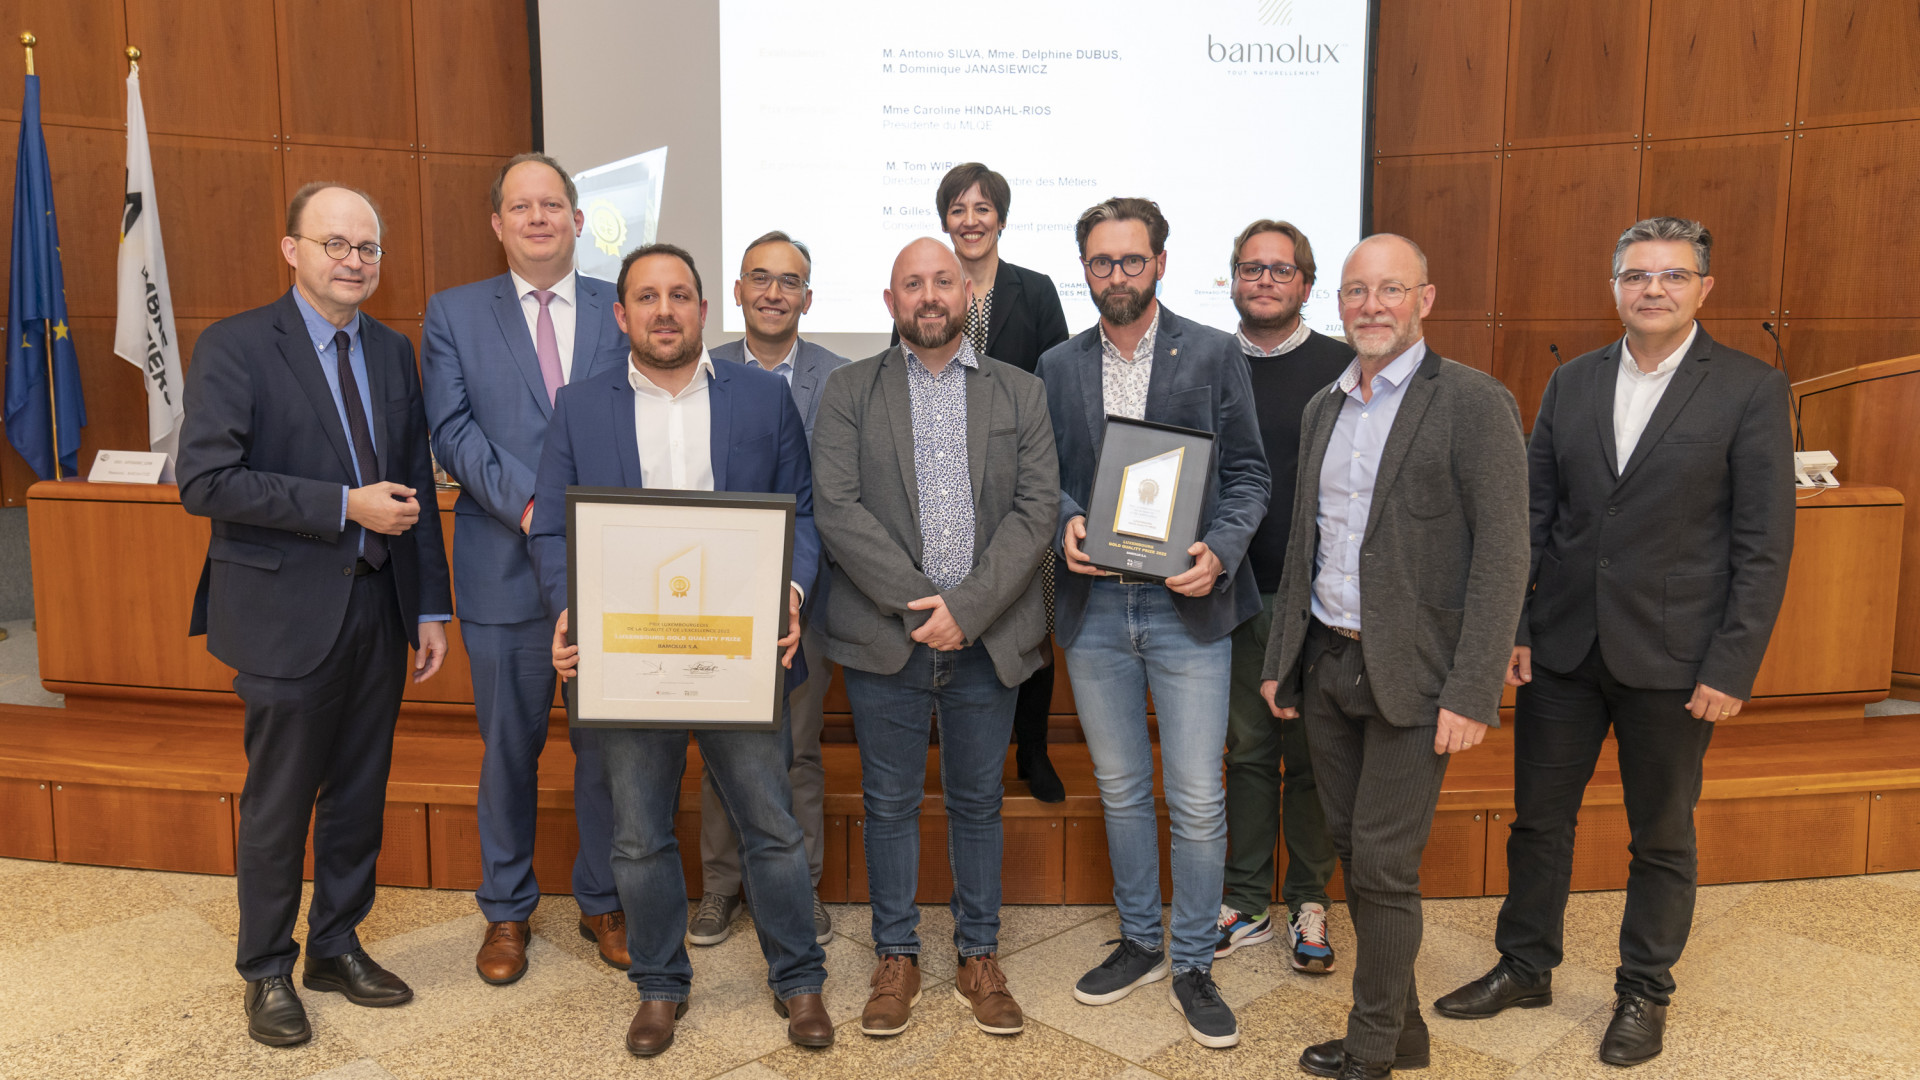 Bamolux a reçu le Prix Luxembourgeois de la Qualité et de l'Excellence GOLD